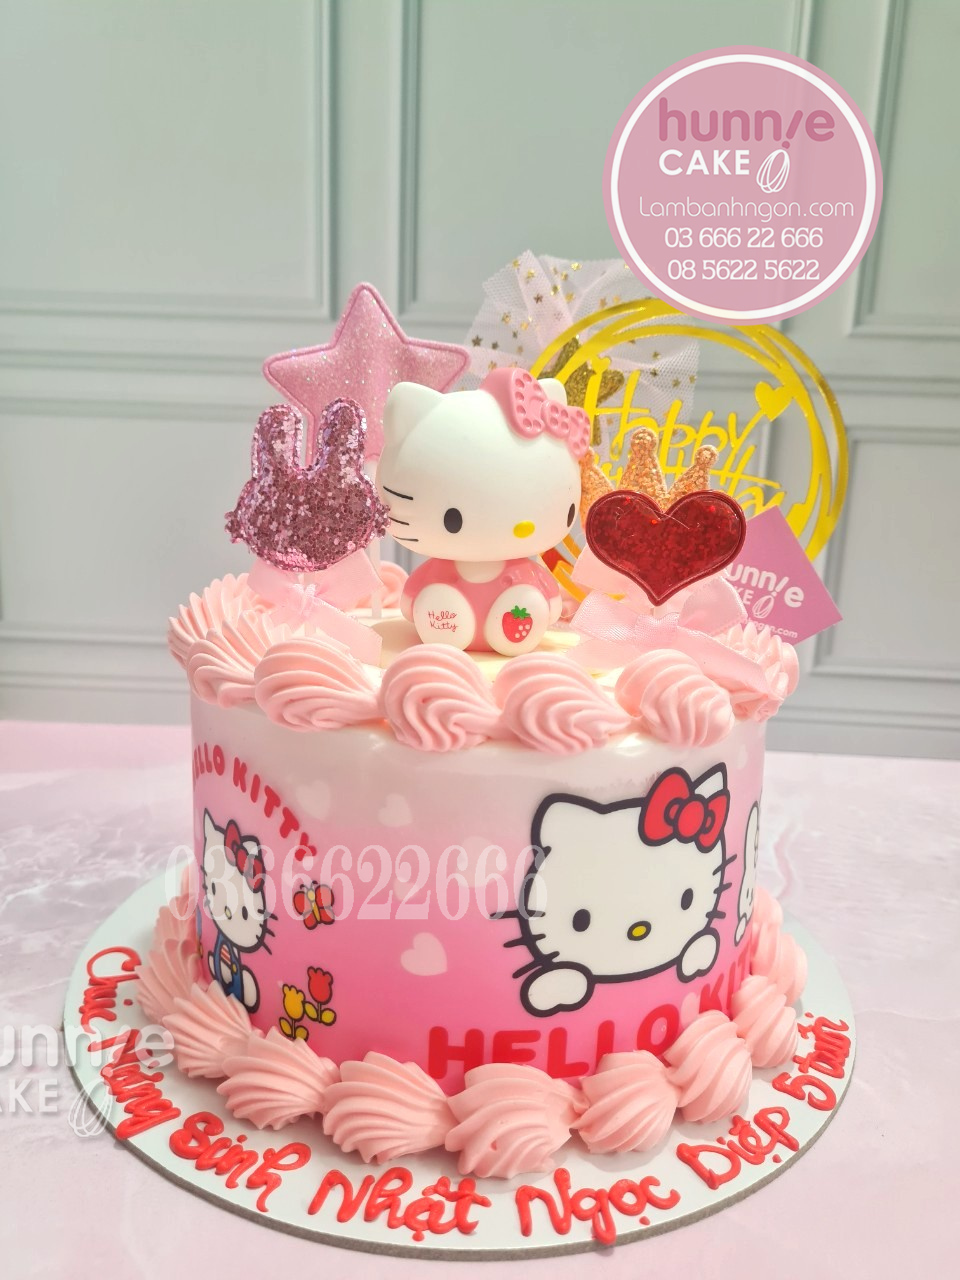 Bánh Hello Kitty sinh nhật màu hồng đẹp nổi bật tặng bé gái 10800 - Bánh ngon đẹp